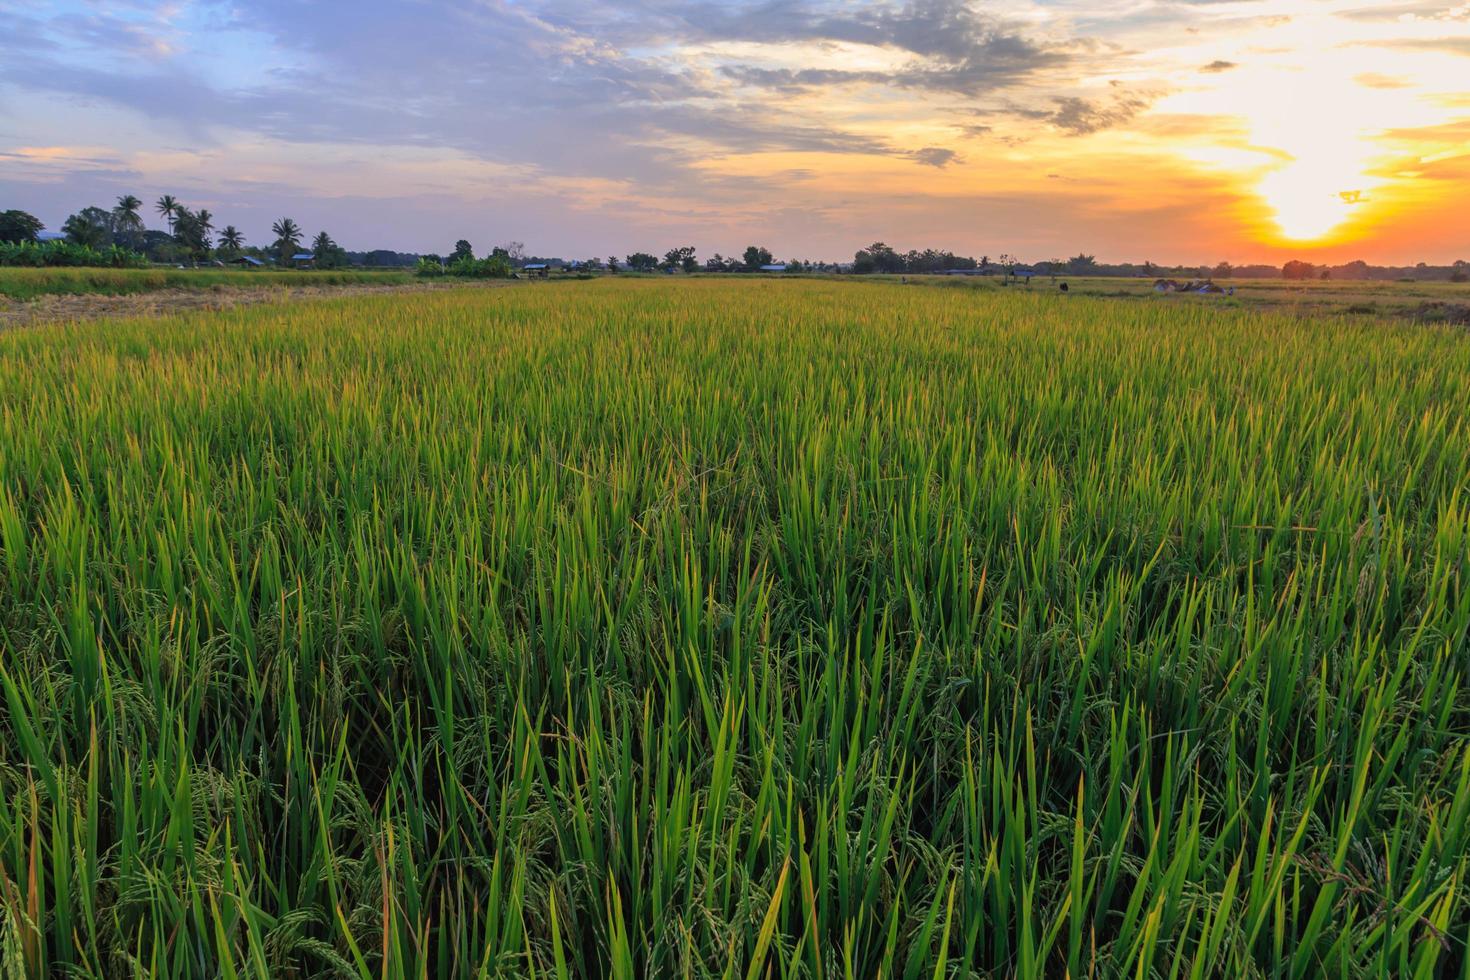 champs de riz et vue sur le ciel coucher de soleil photo